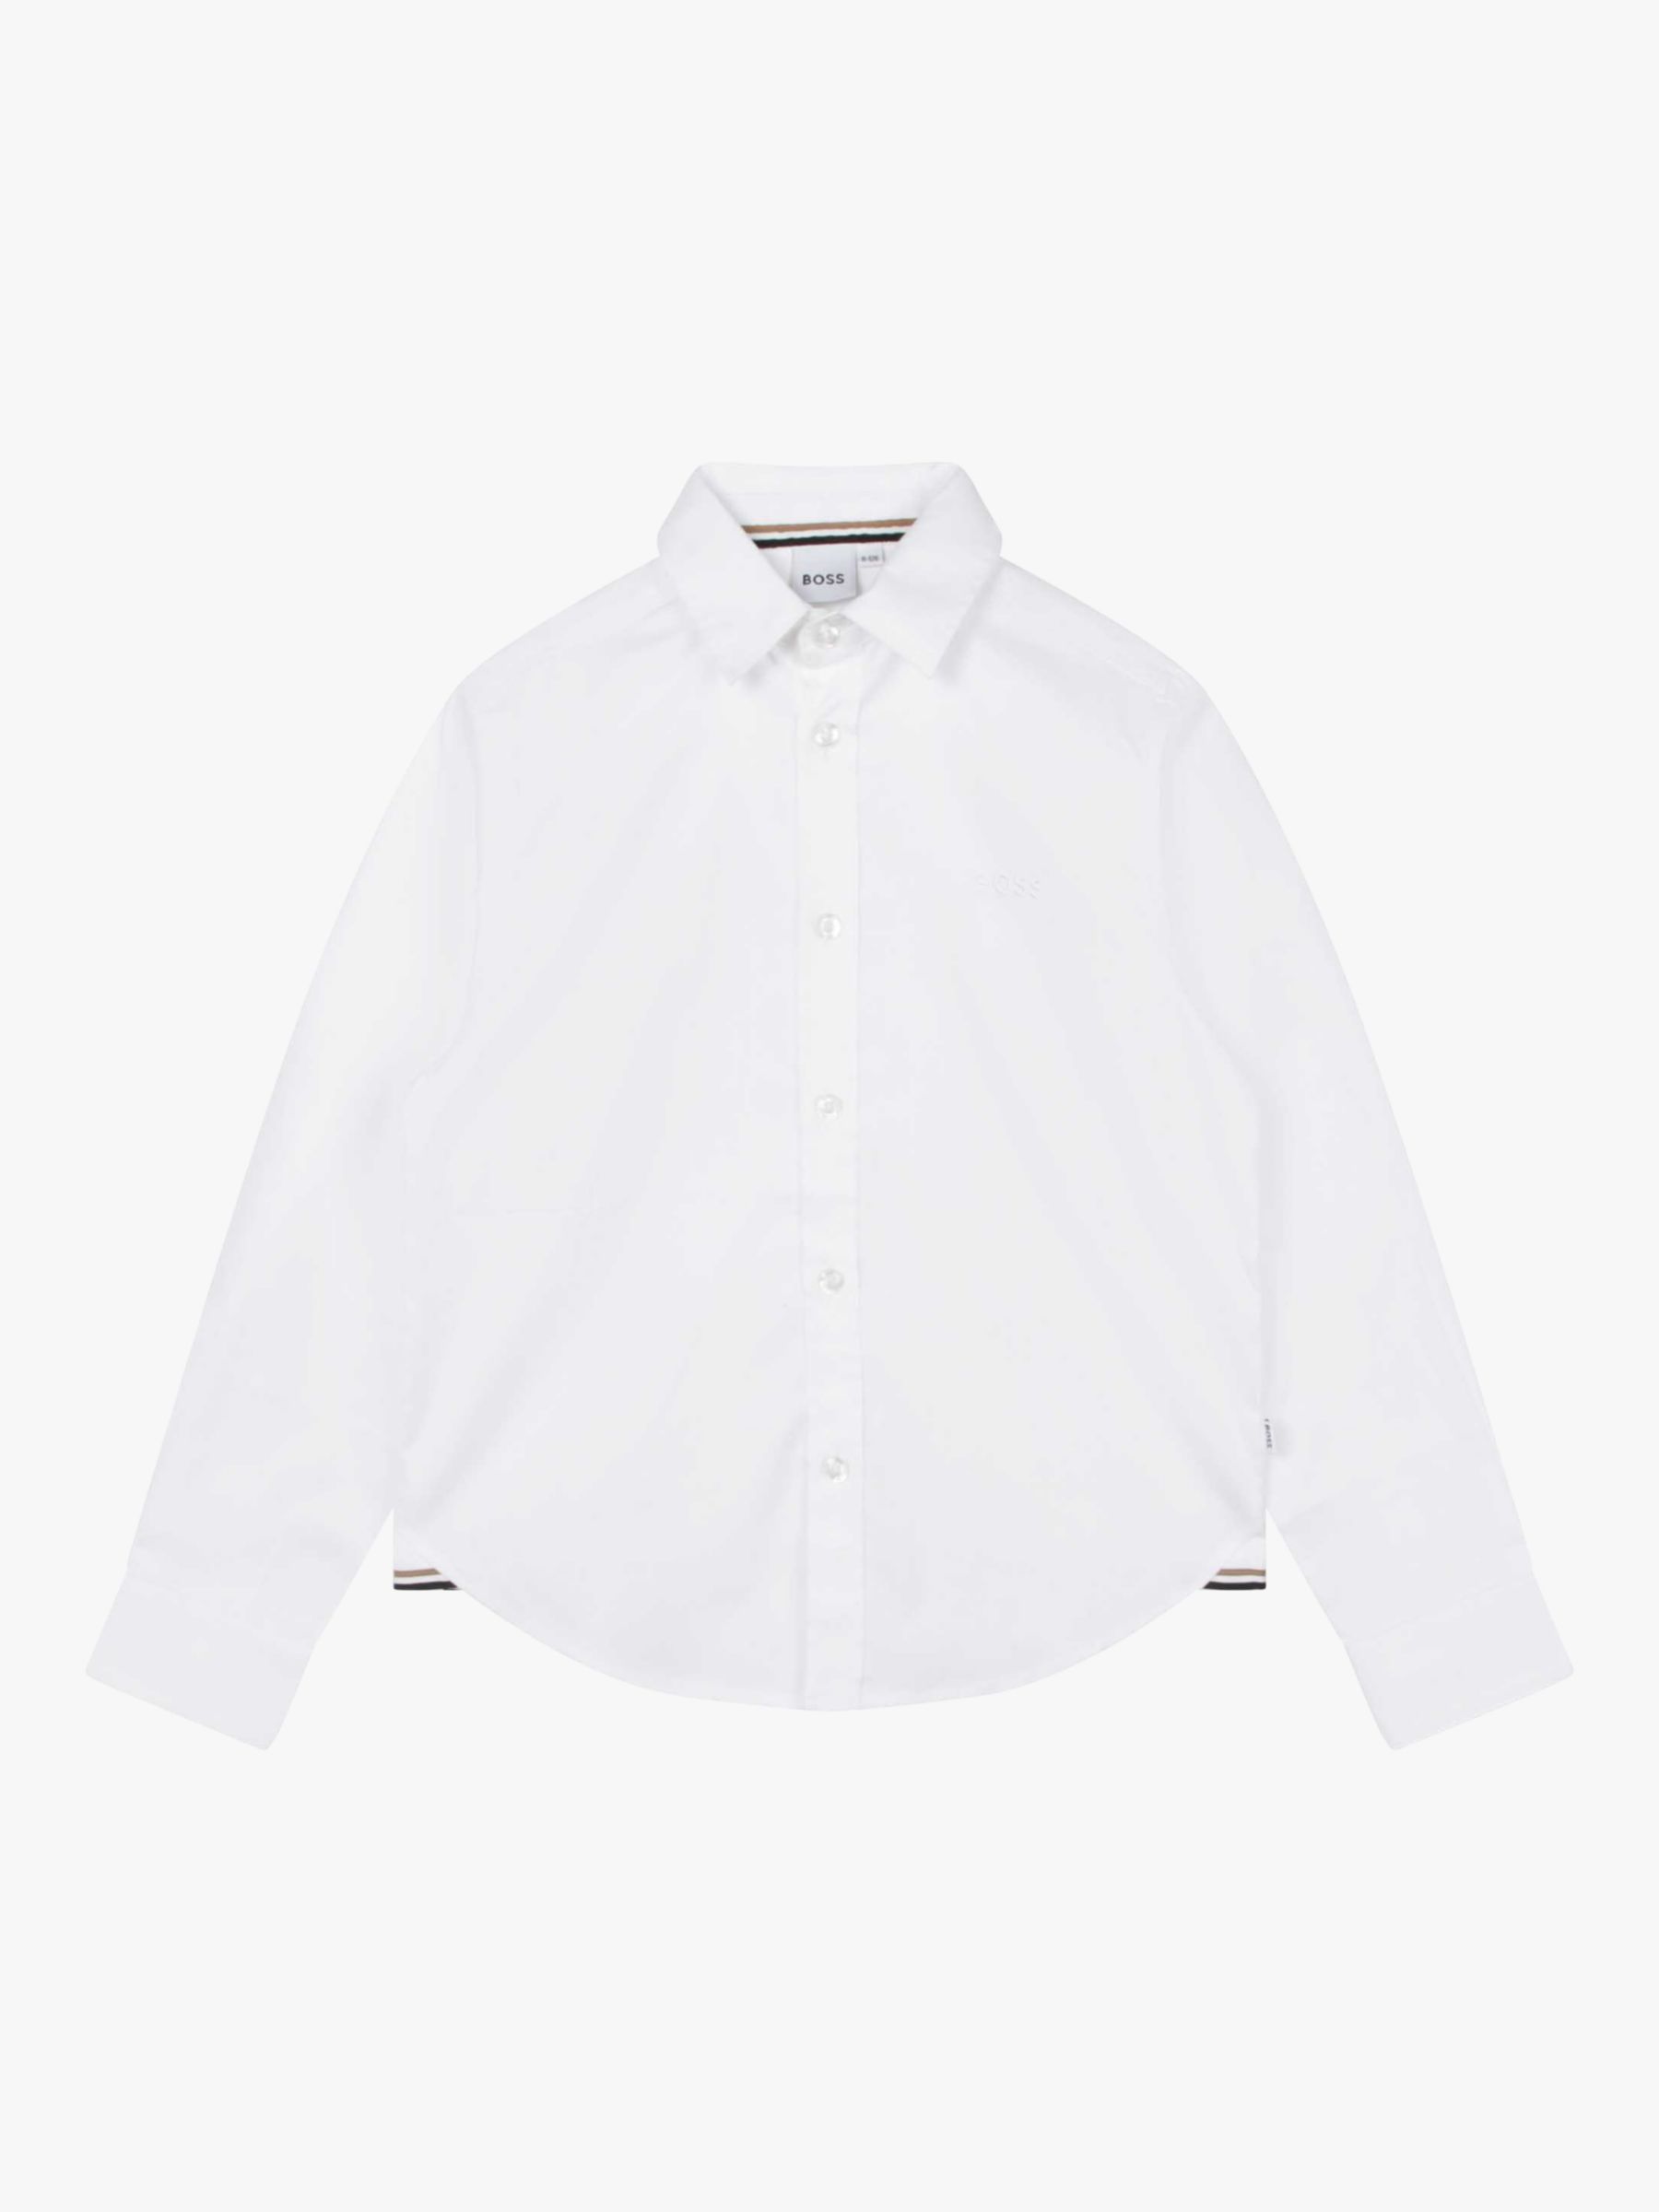 Детская оксфордская рубашка BOSS с длинным рукавом HUGO BOSS, белый рубашка из ткани оксфорд прямая с длинными рукавами xl белый